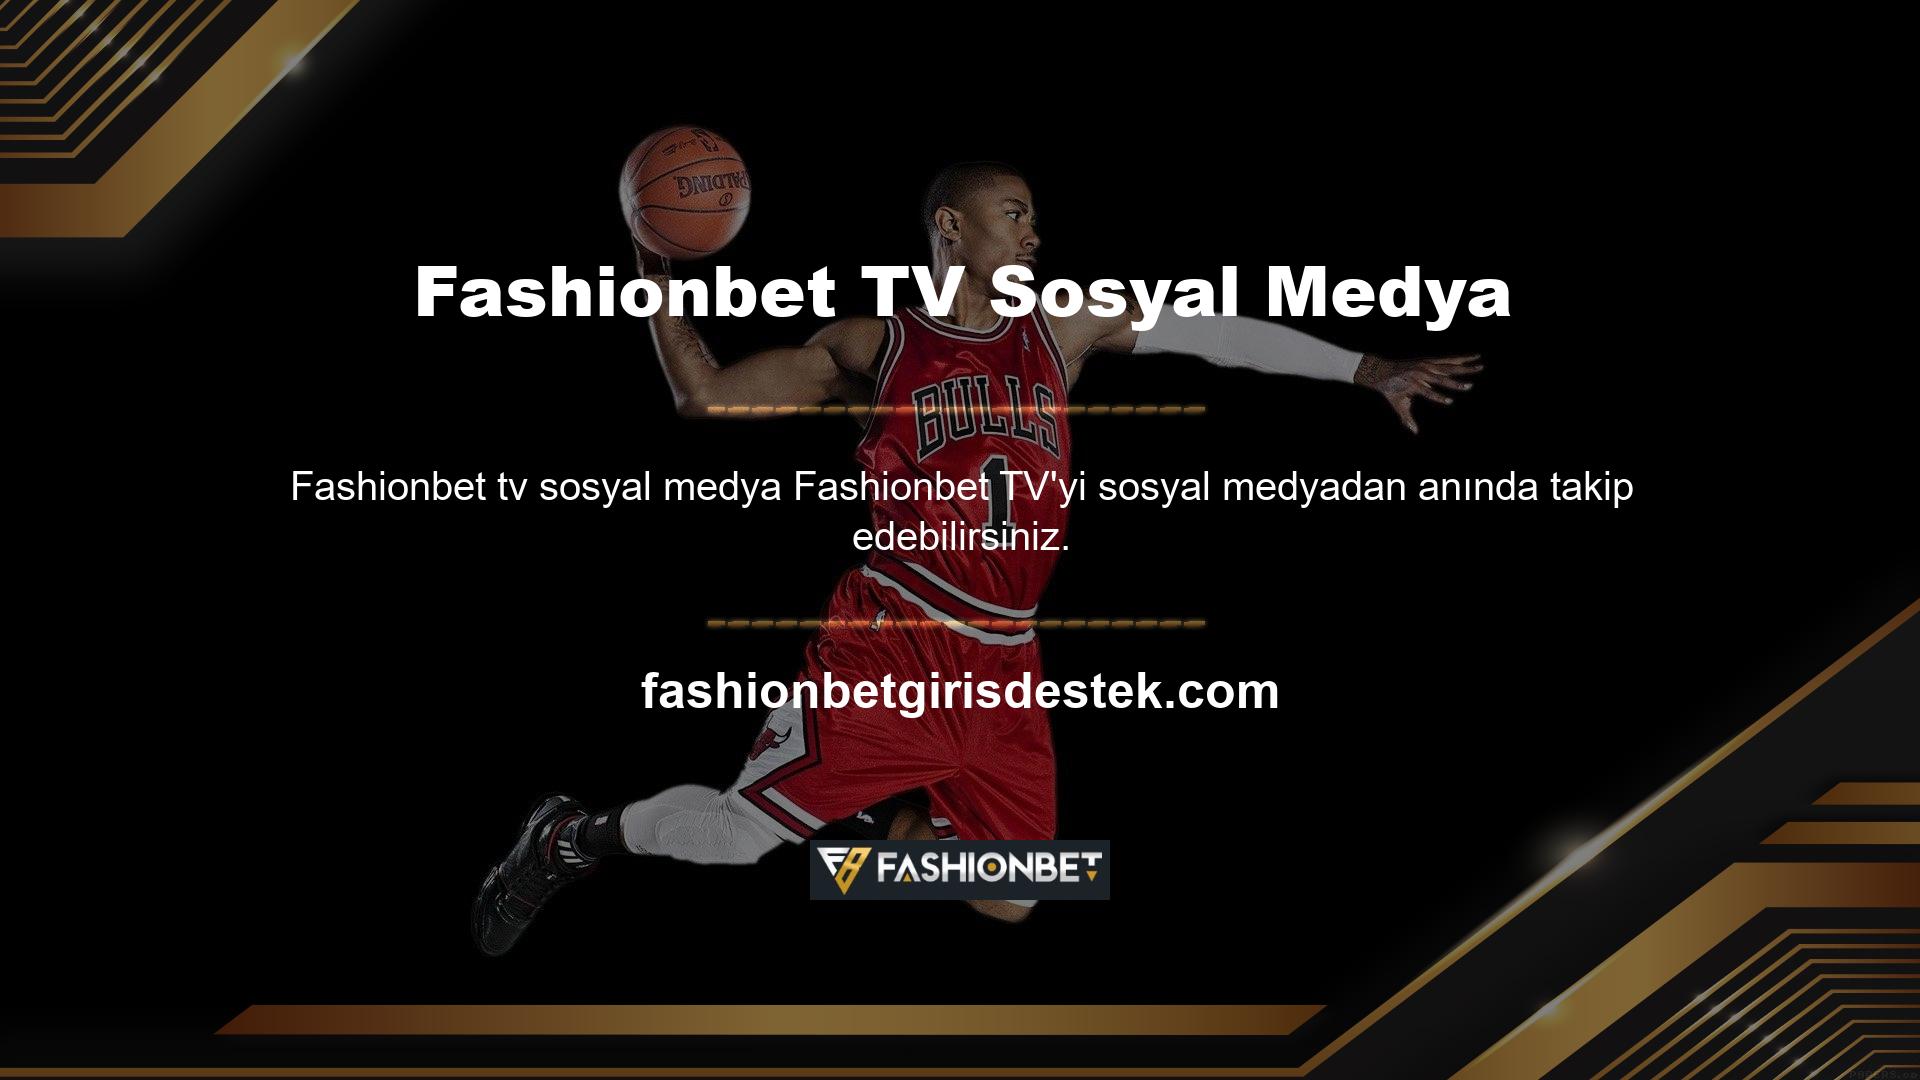 Fashionbet TV Sosyal Medya